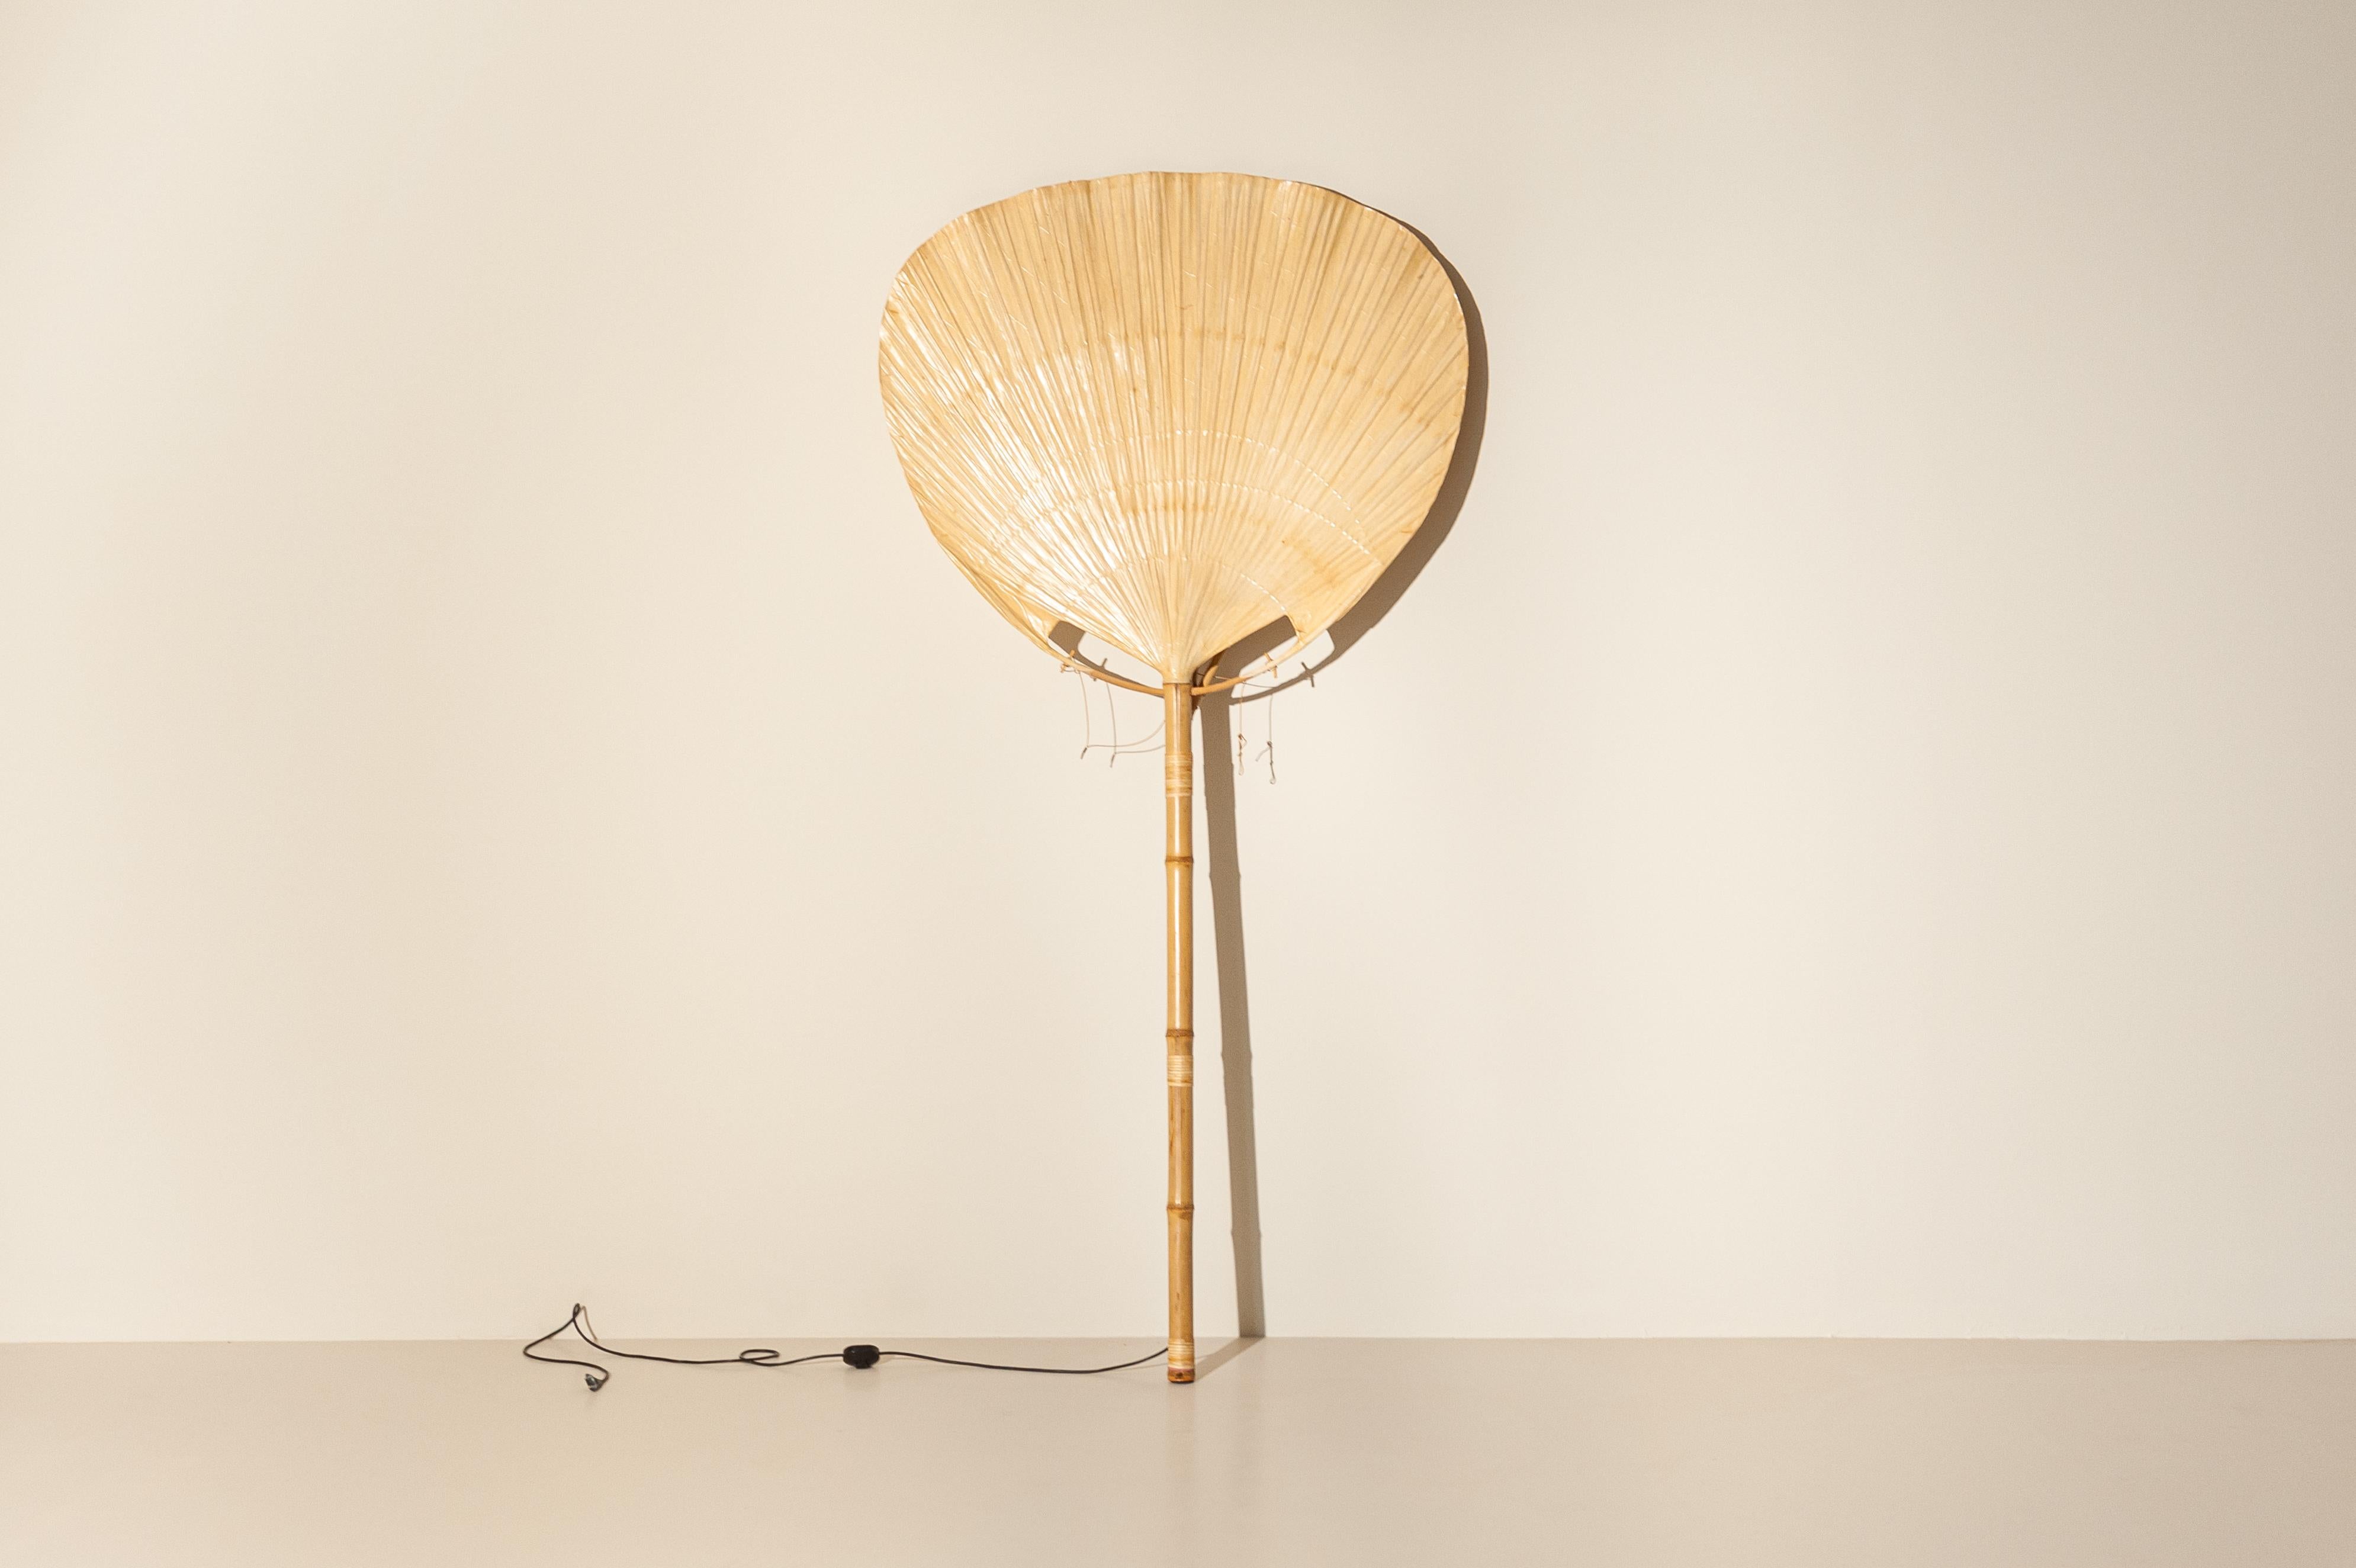 Große und seltene Uchiwa Bambus Stehleuchte oder Wandleuchte von Ingo Maurer für Design M, 1970er Jahre, Deutschland. 

Ingo Maurers Interesse an Reispapier für Lampenschirme brachte ihn in den 1970er Jahren dazu, verschiedene Modelle zu entwerfen